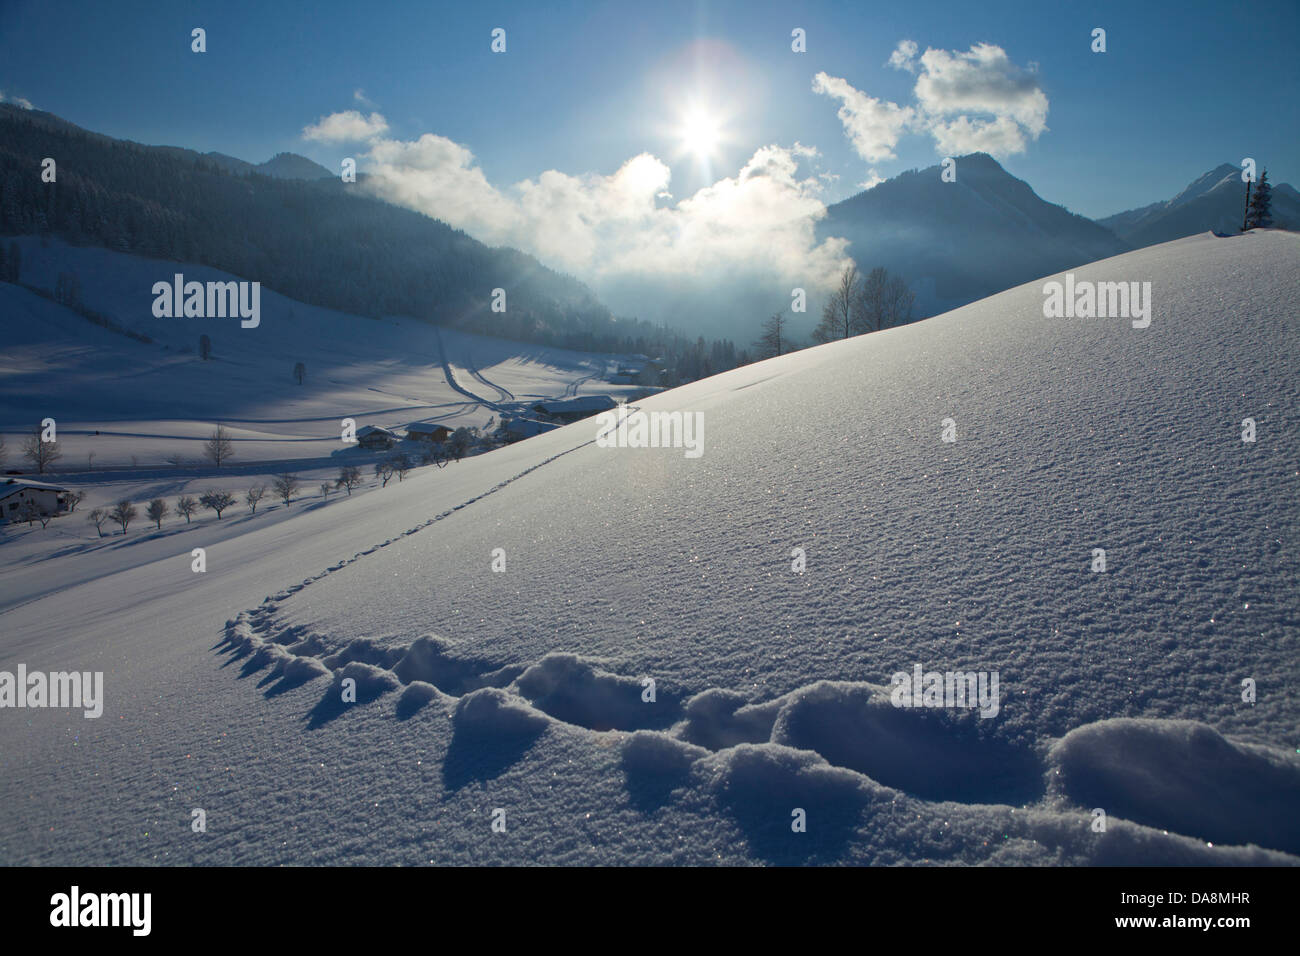 Österreich, Europa, Tirol, Unterland, Tiefland, Thiersee, Hinterthiersee, Winter, Schnee, Track, Trace, verschneiten Schuh, Schneeschuh, hinten l Stockfoto